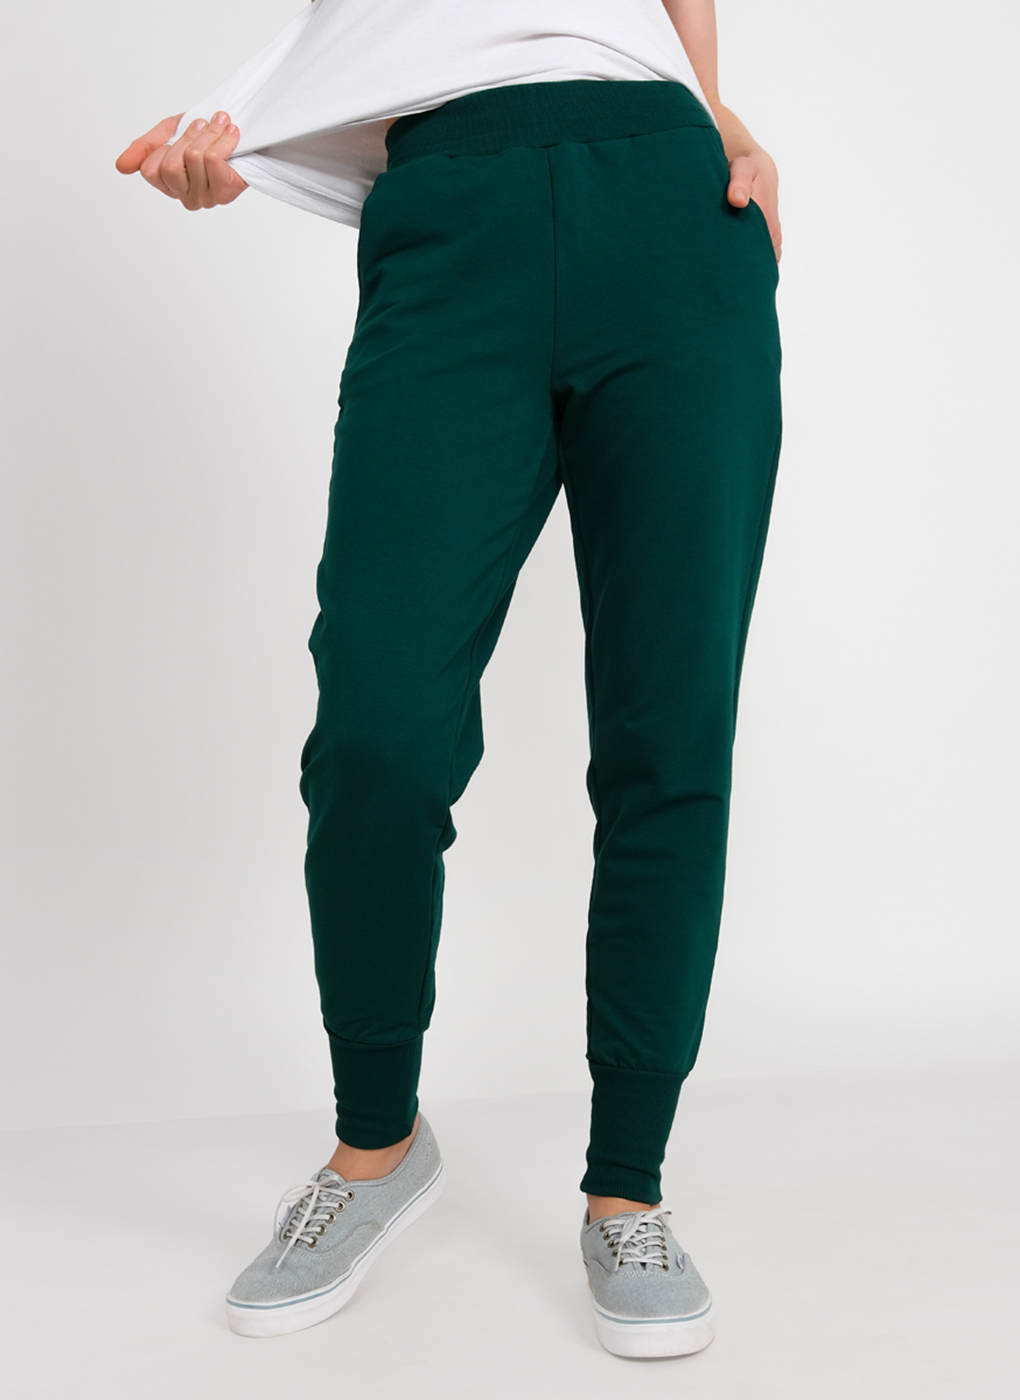 Спортивные брюки женские Каляев 63484 зеленые 48 RU